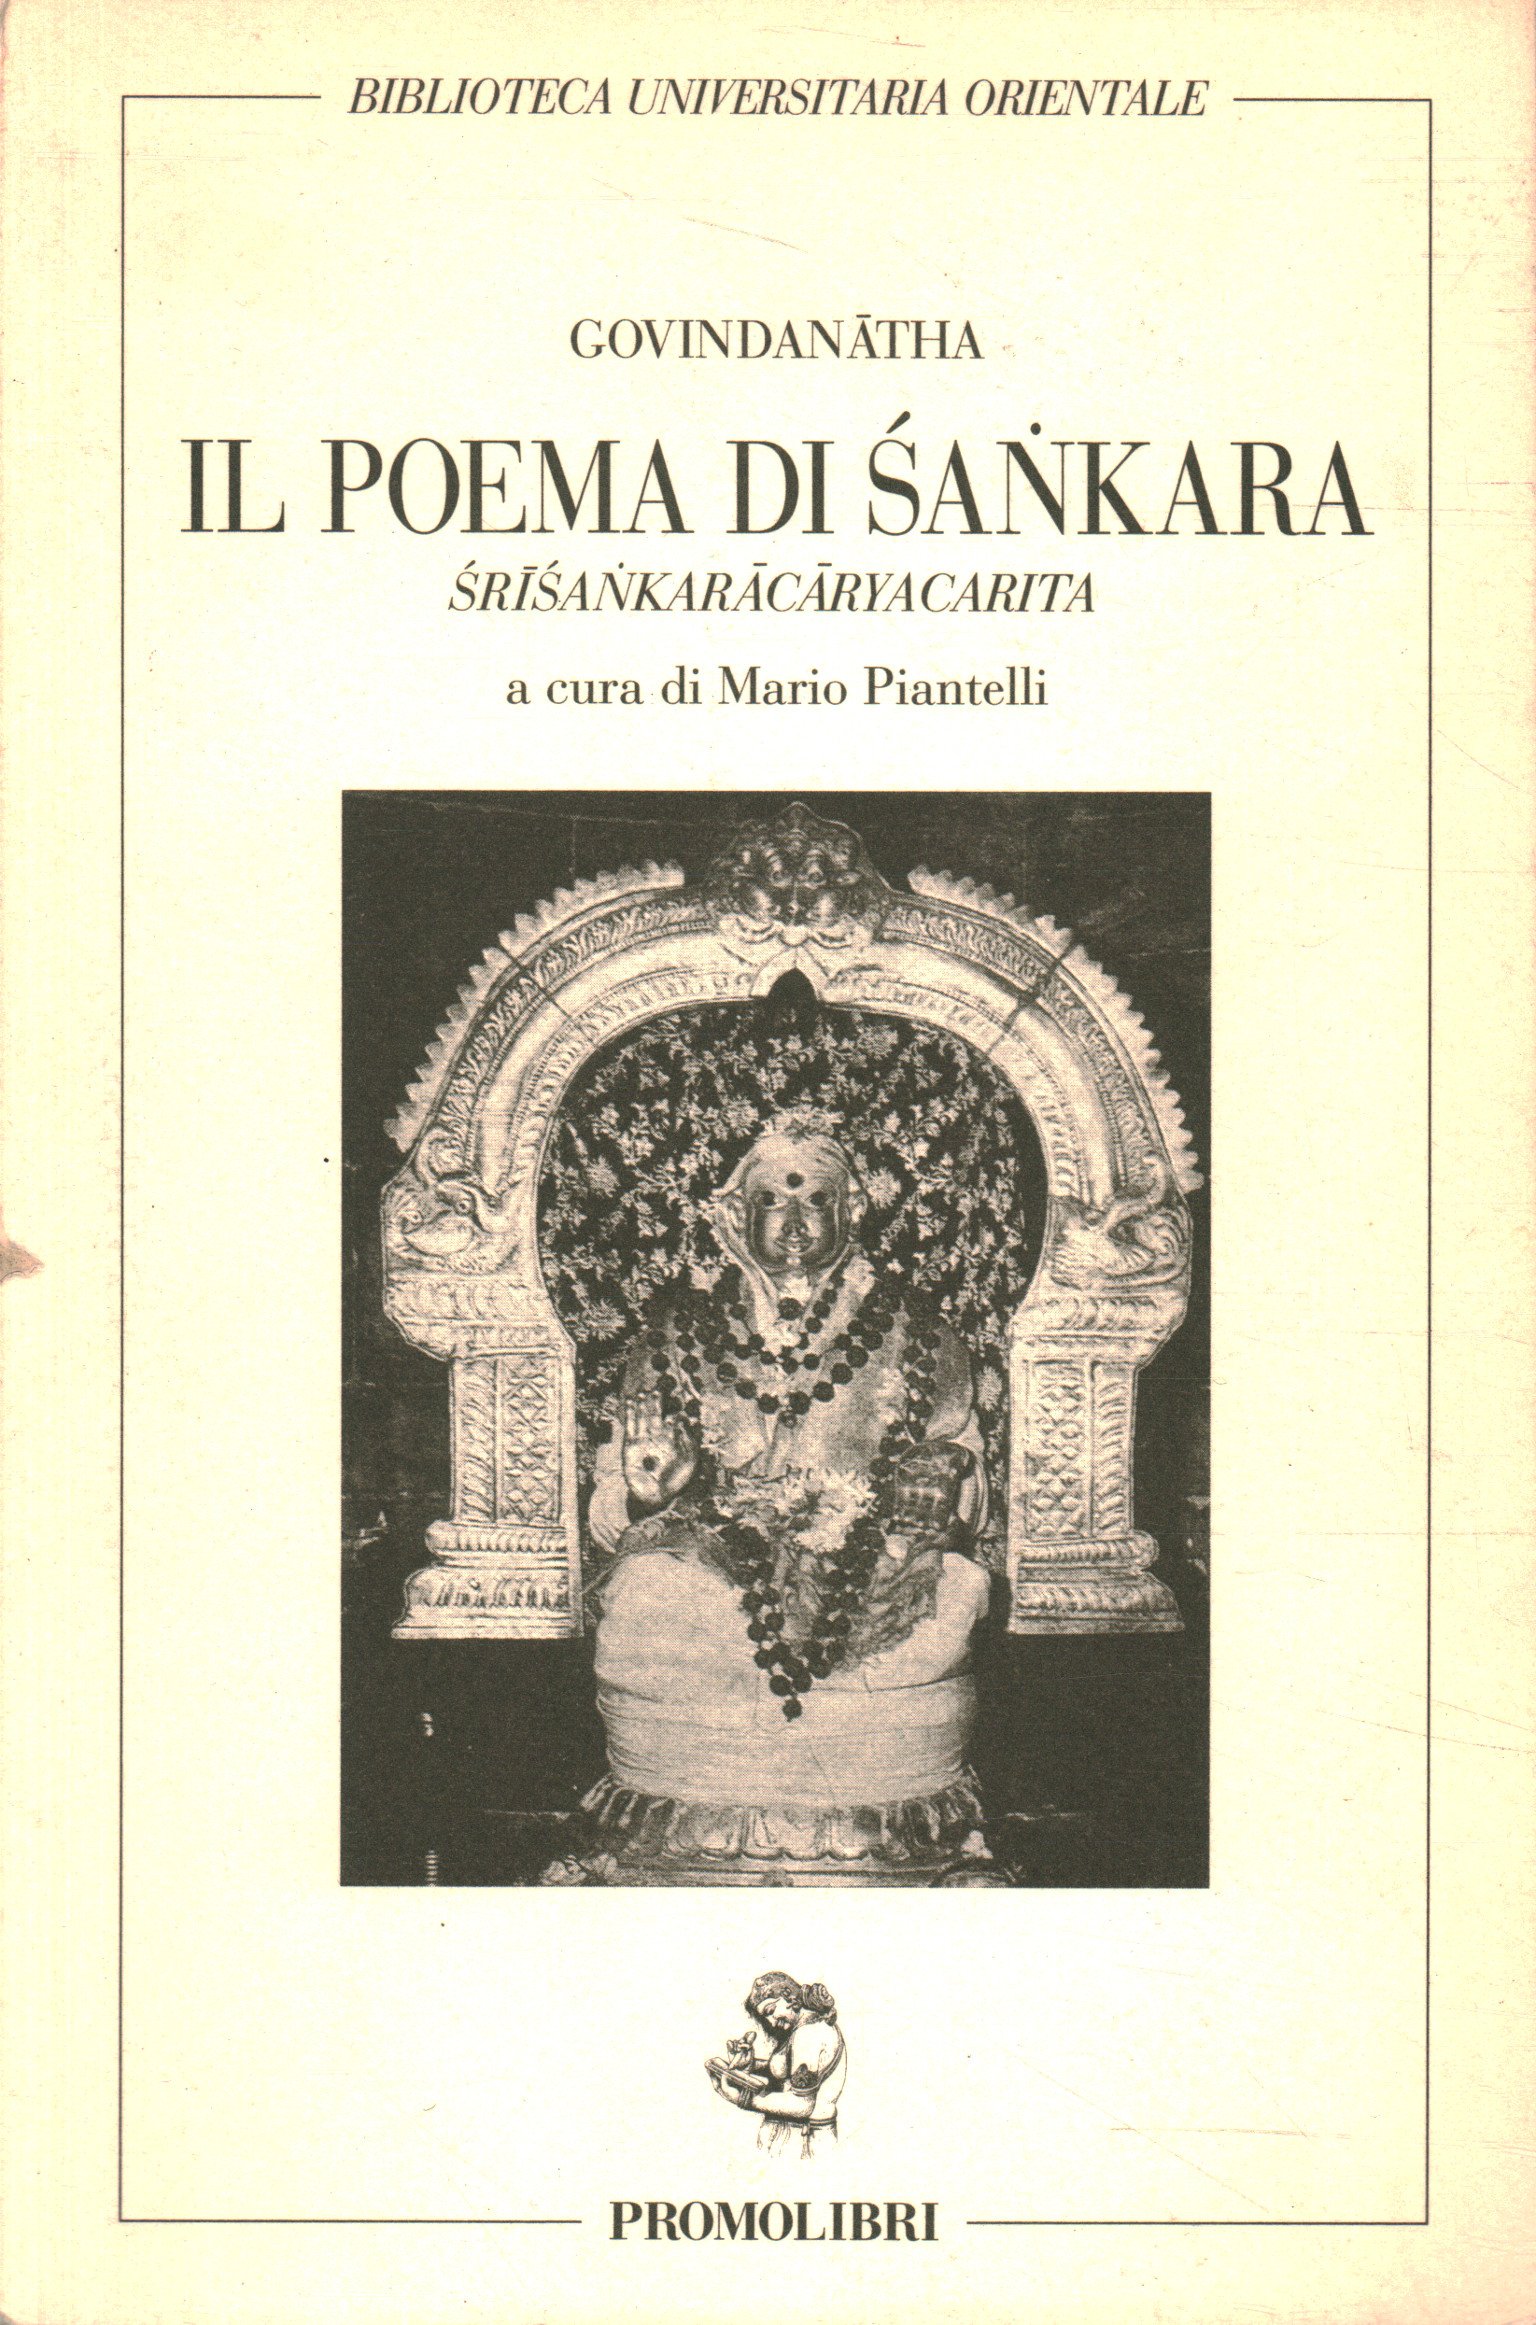 El poema de Sankara